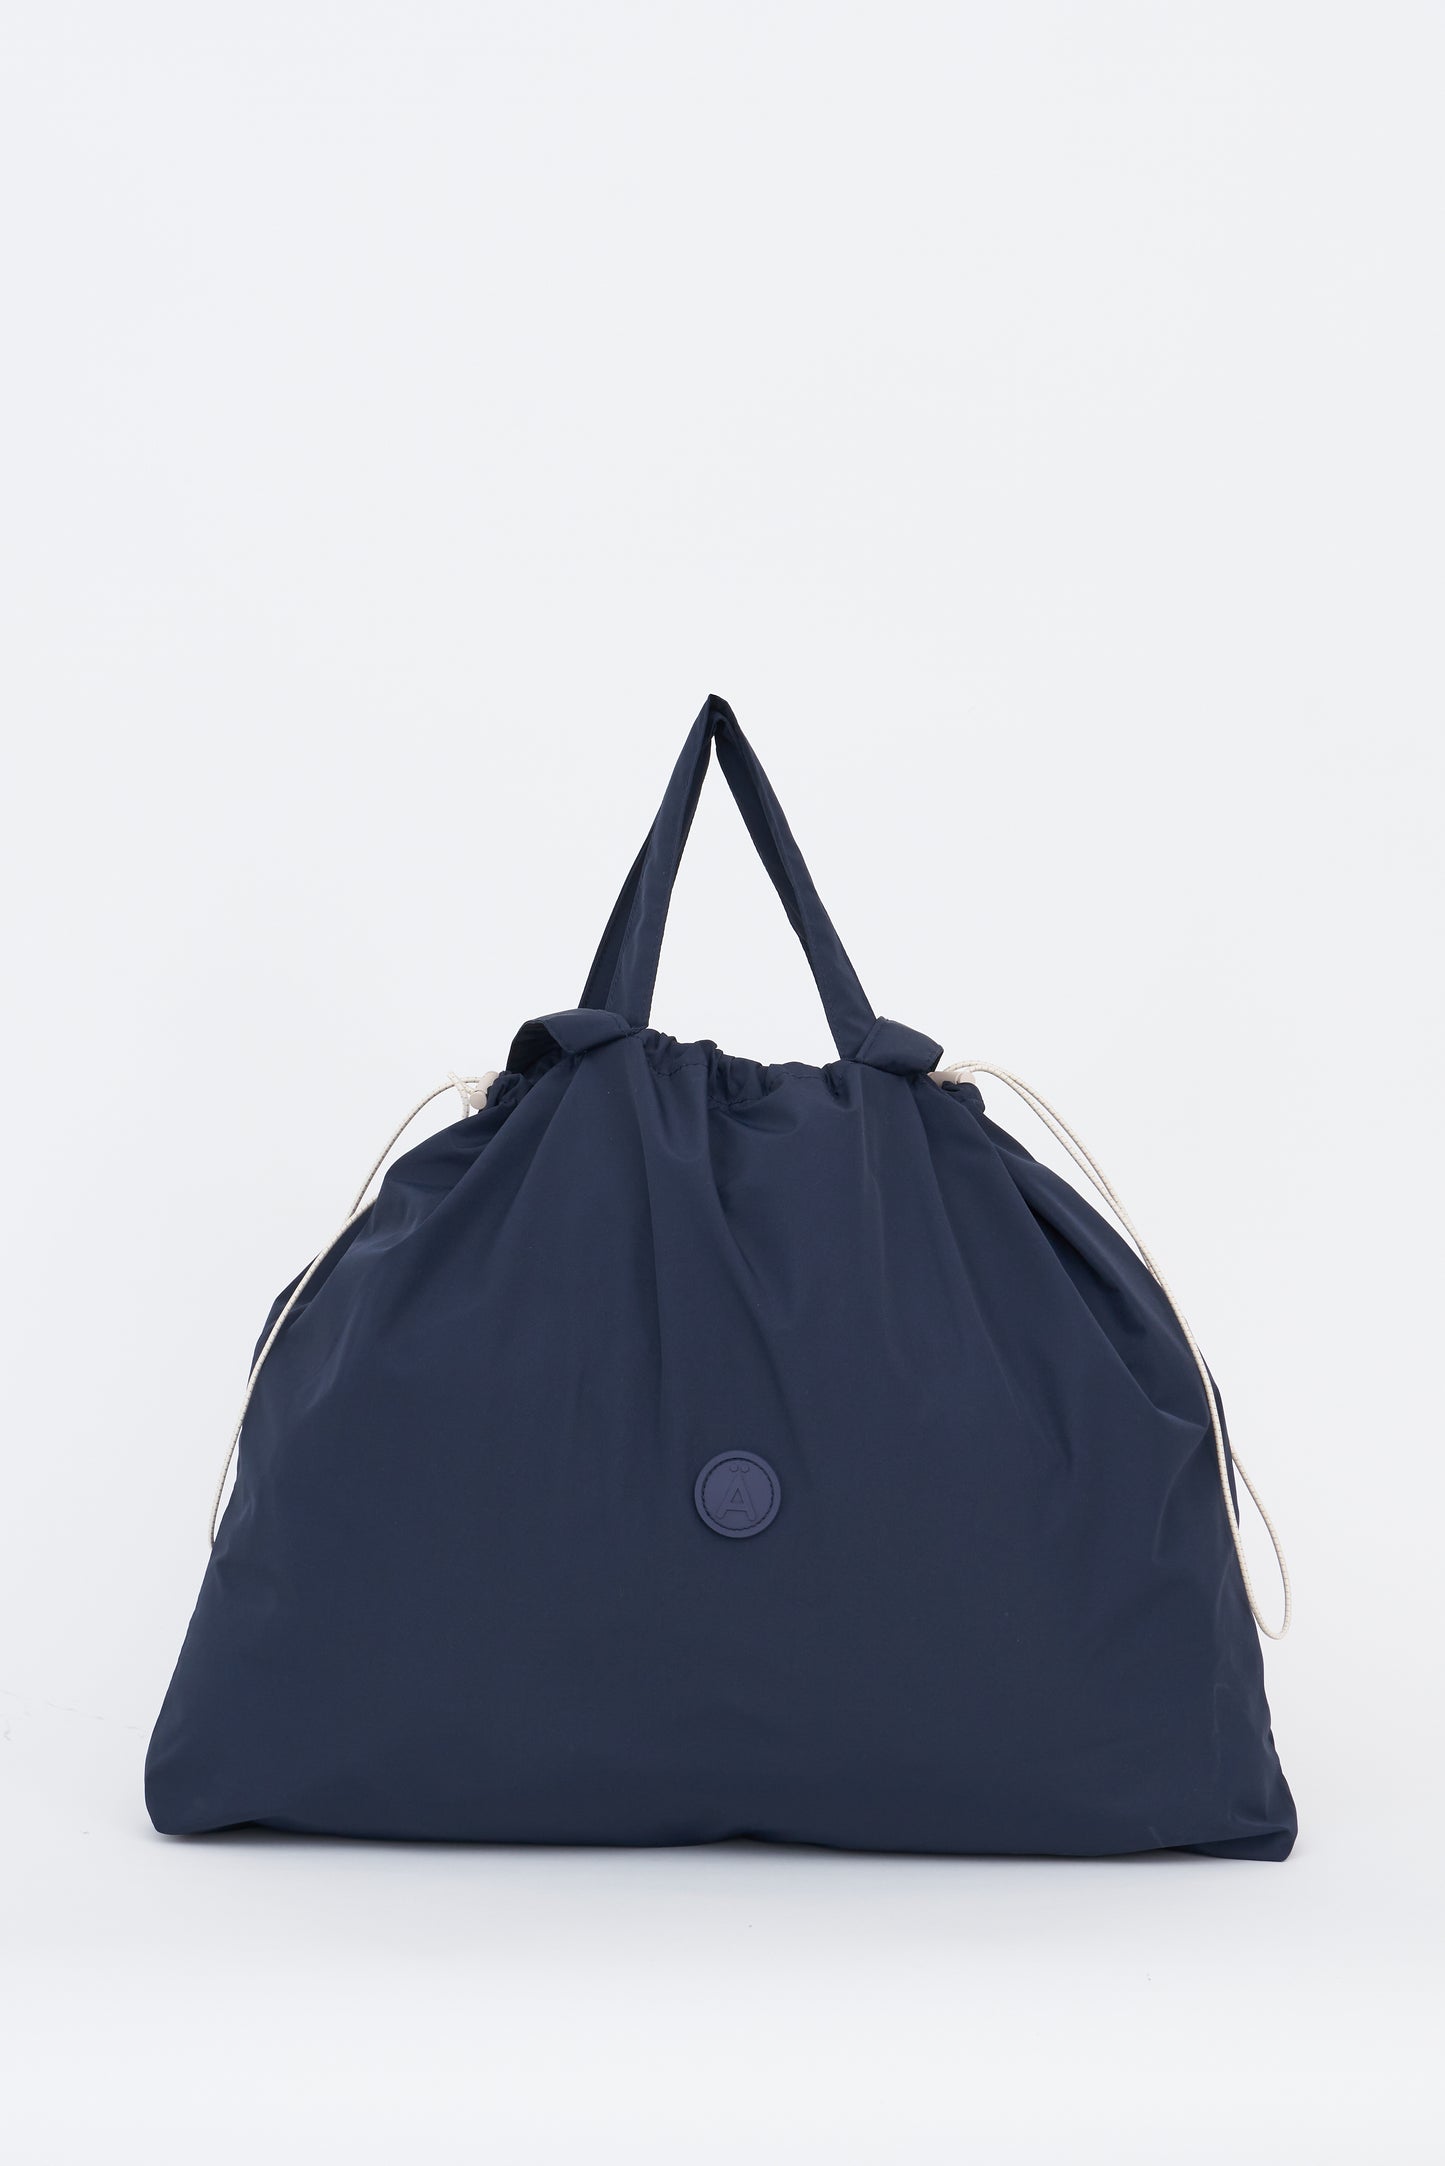 Imvula Waterproof Bag Navy